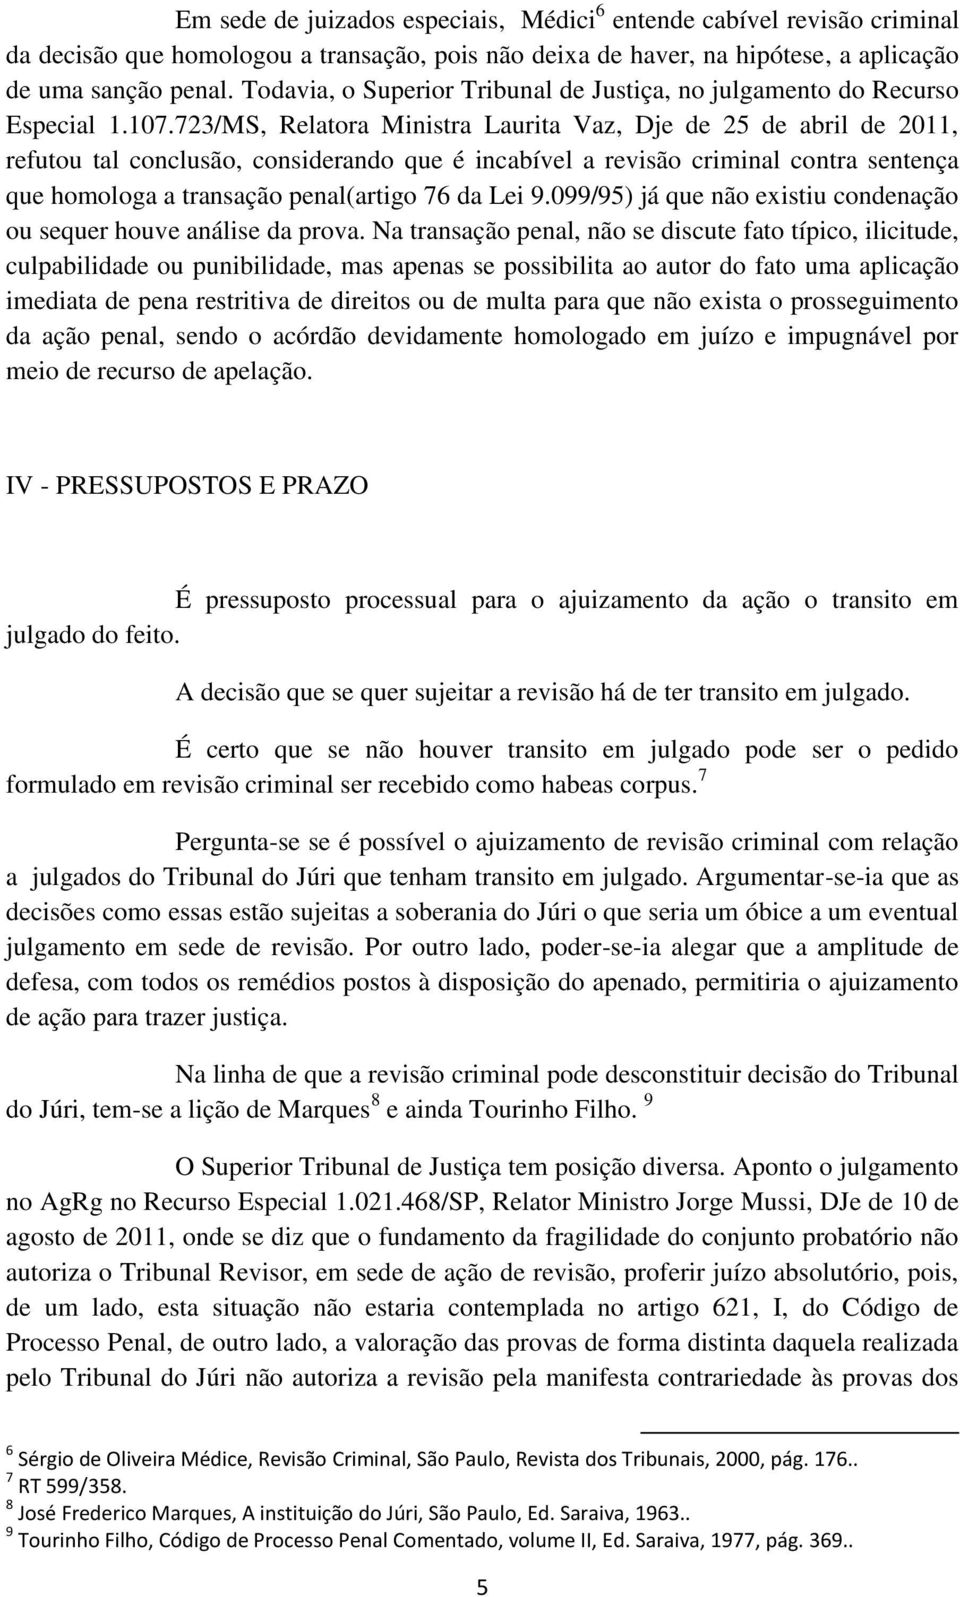 723/MS, Relatora Ministra Laurita Vaz, Dje de 25 de abril de 2011, refutou tal conclusão, considerando que é incabível a revisão criminal contra sentença que homologa a transação penal(artigo 76 da